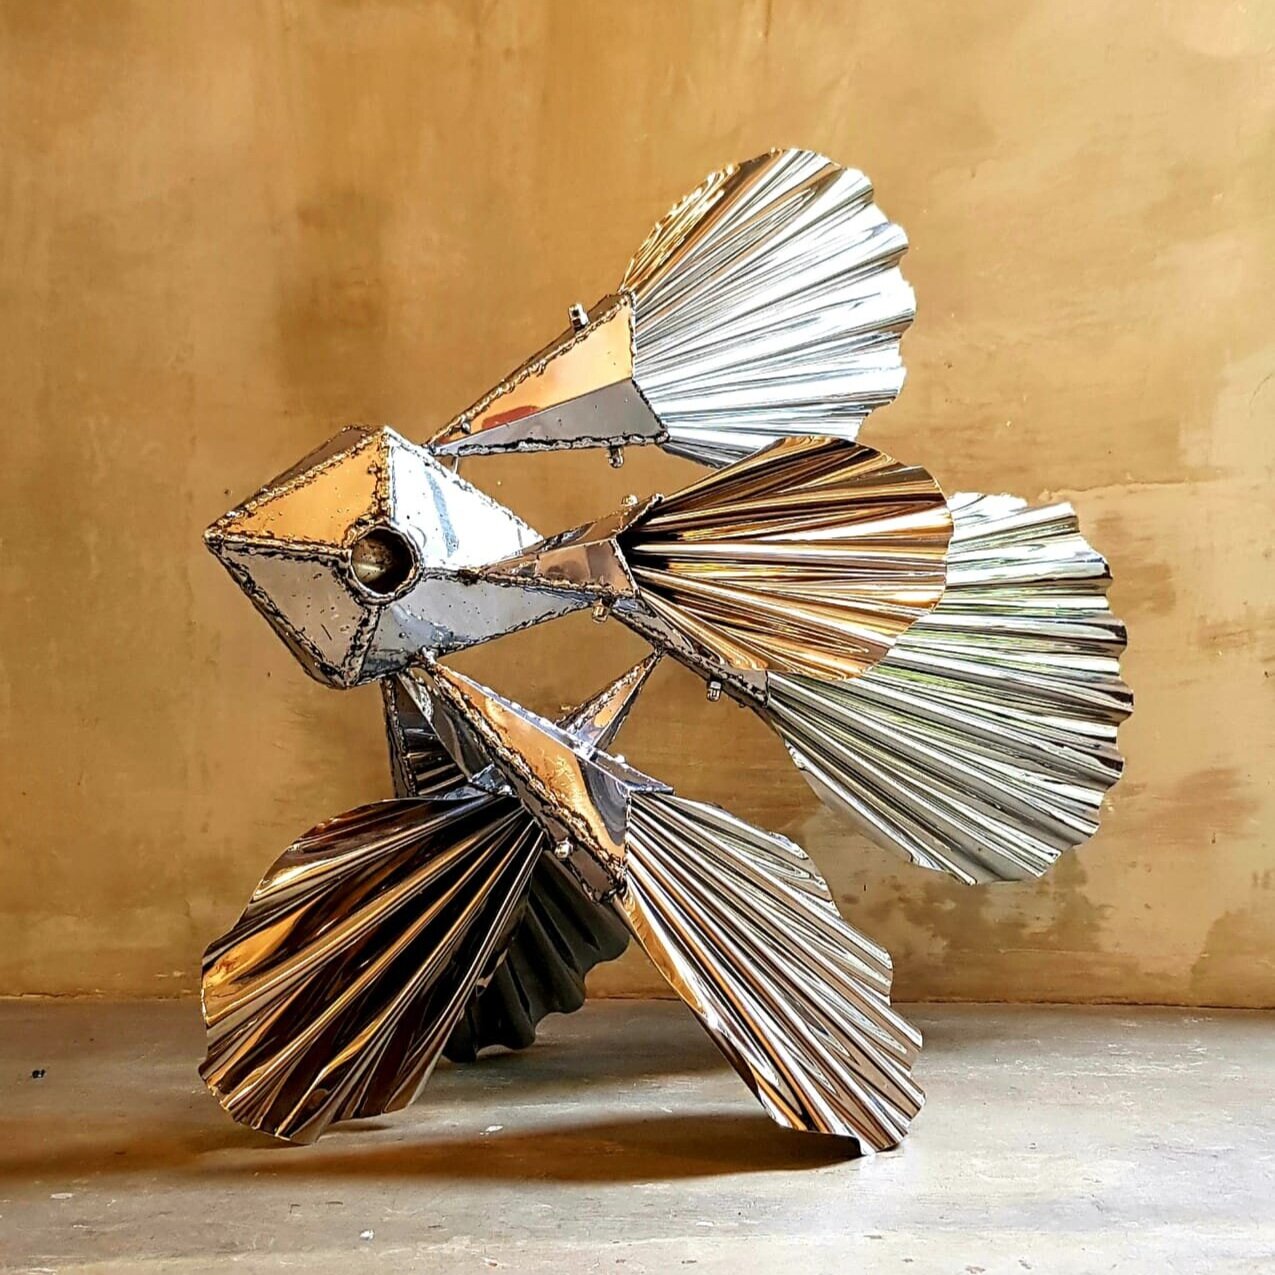   Juan Pablo Pistilli    Betta  , 2019 Metal  44 x 20 x 20 cm  Imaginario Galería de Arte 